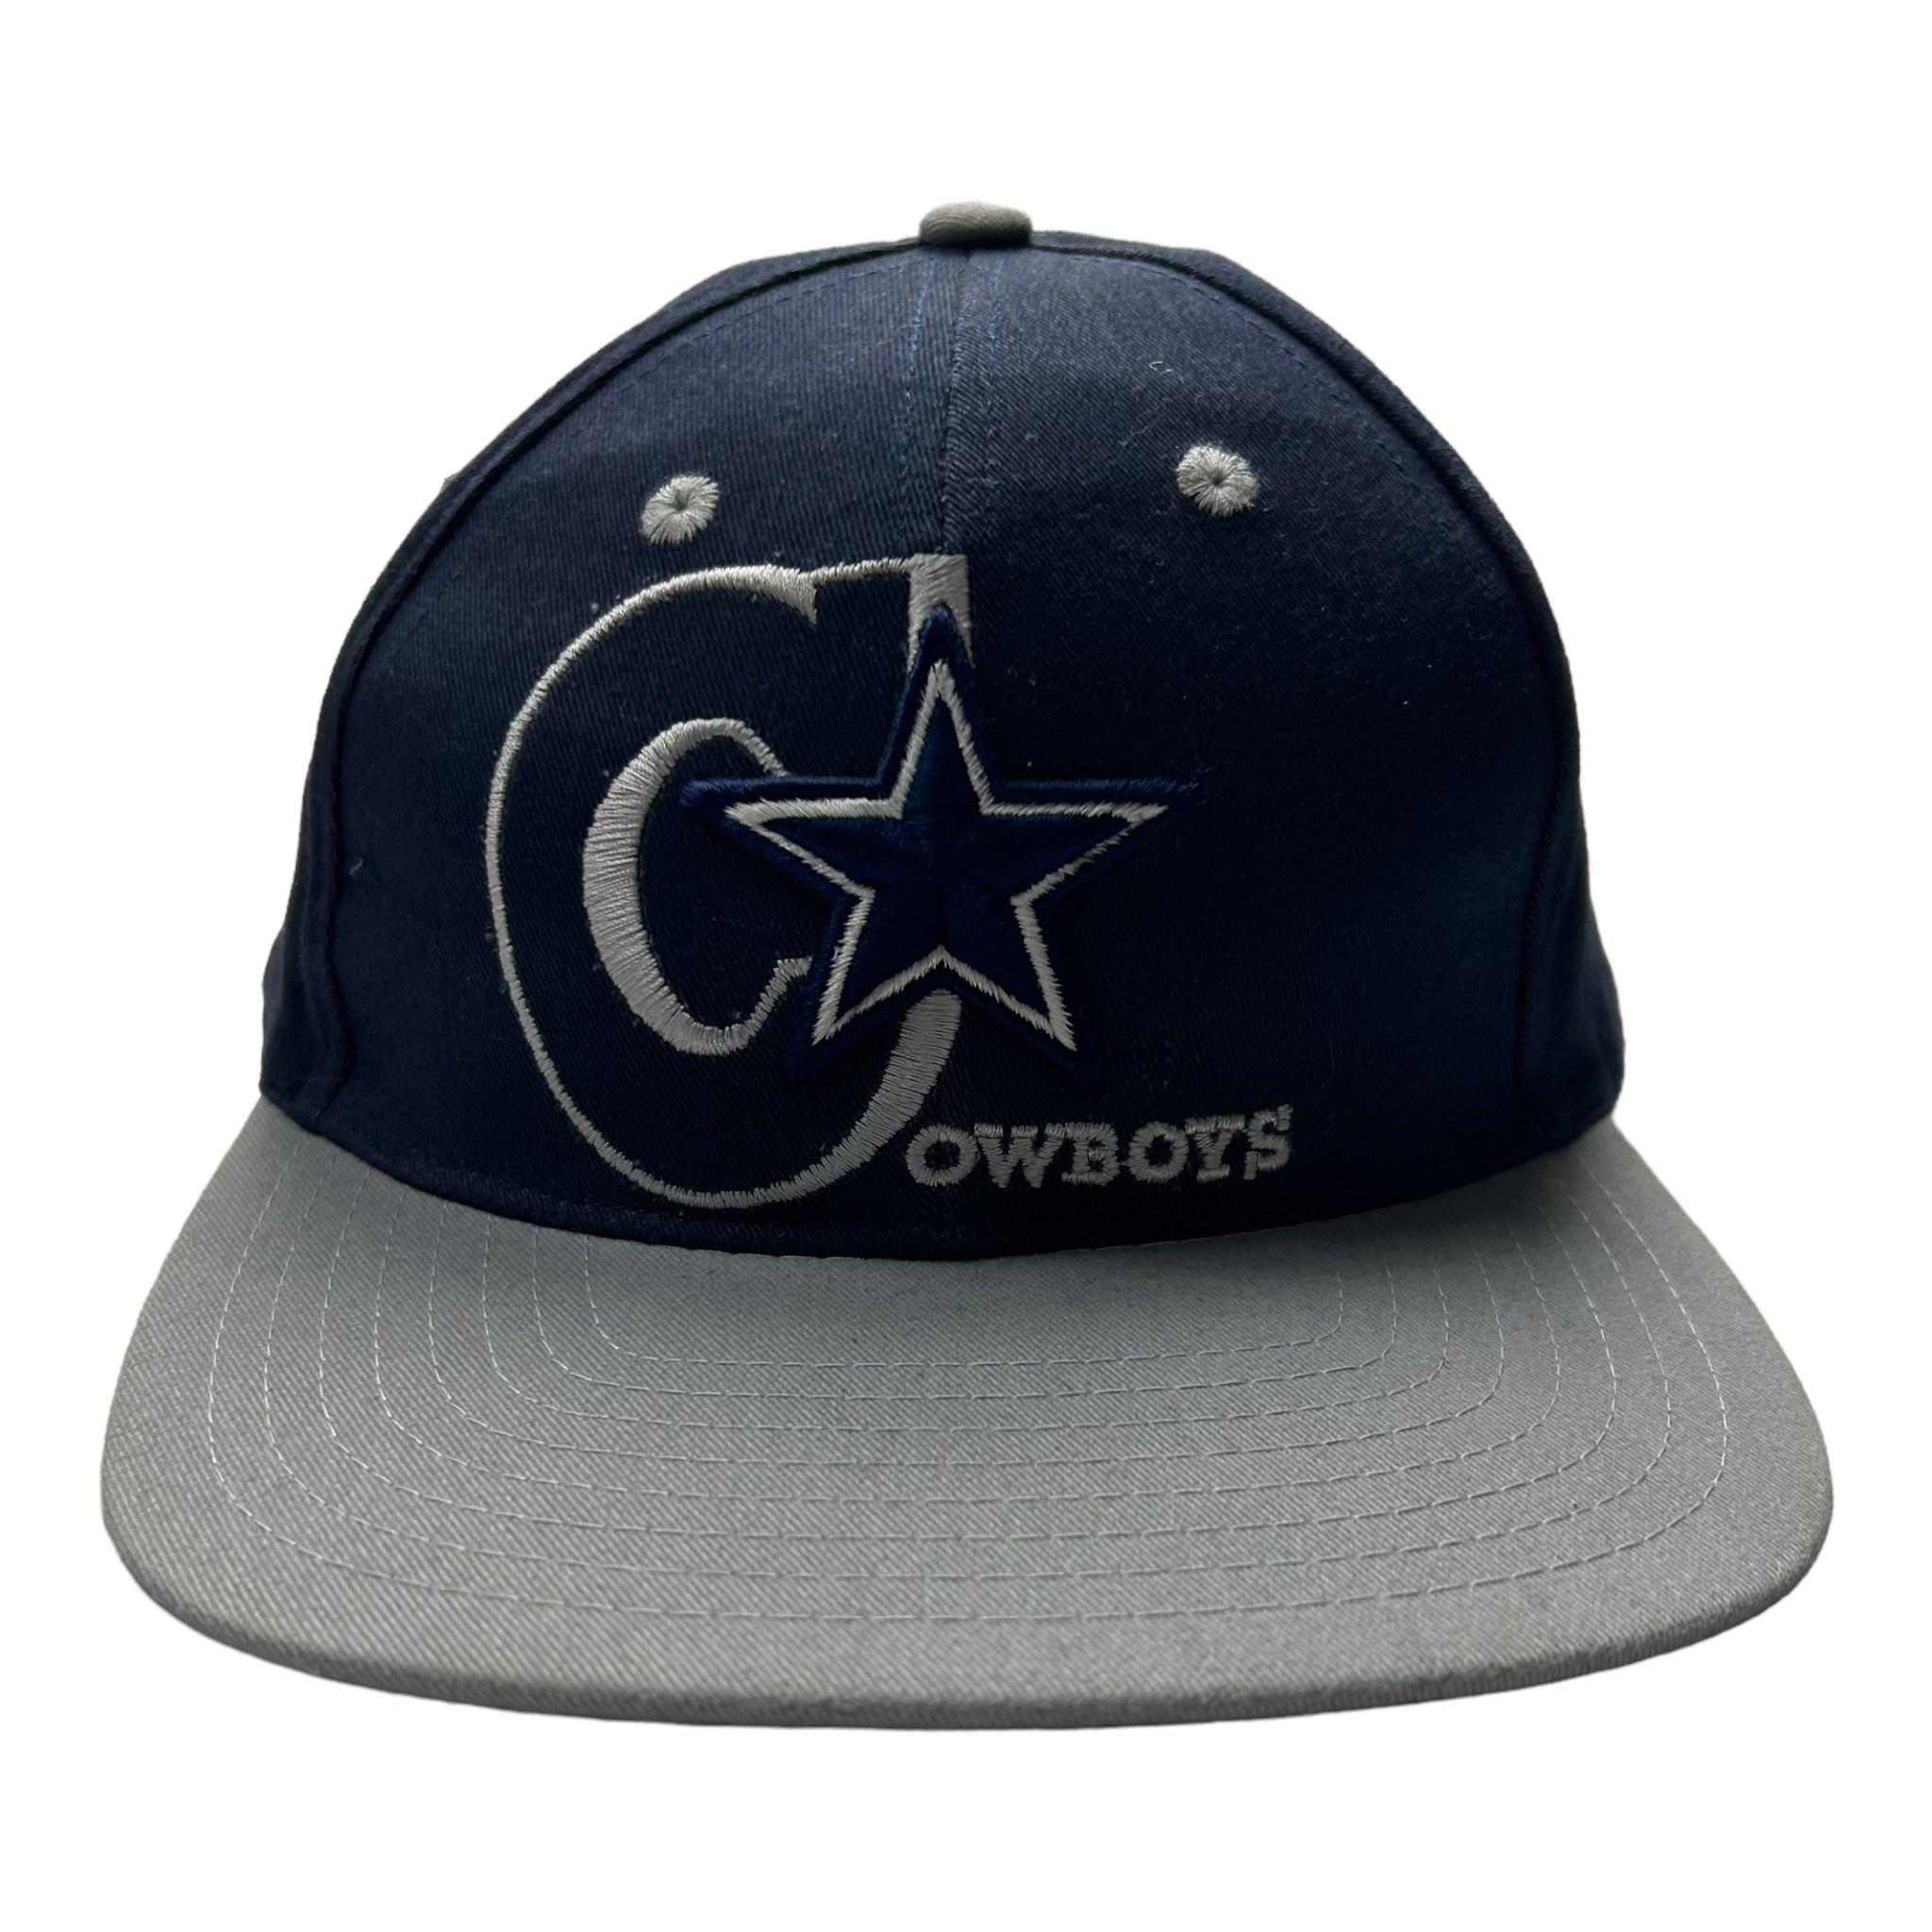 Vintage Dallas Cowboys NFL Hat